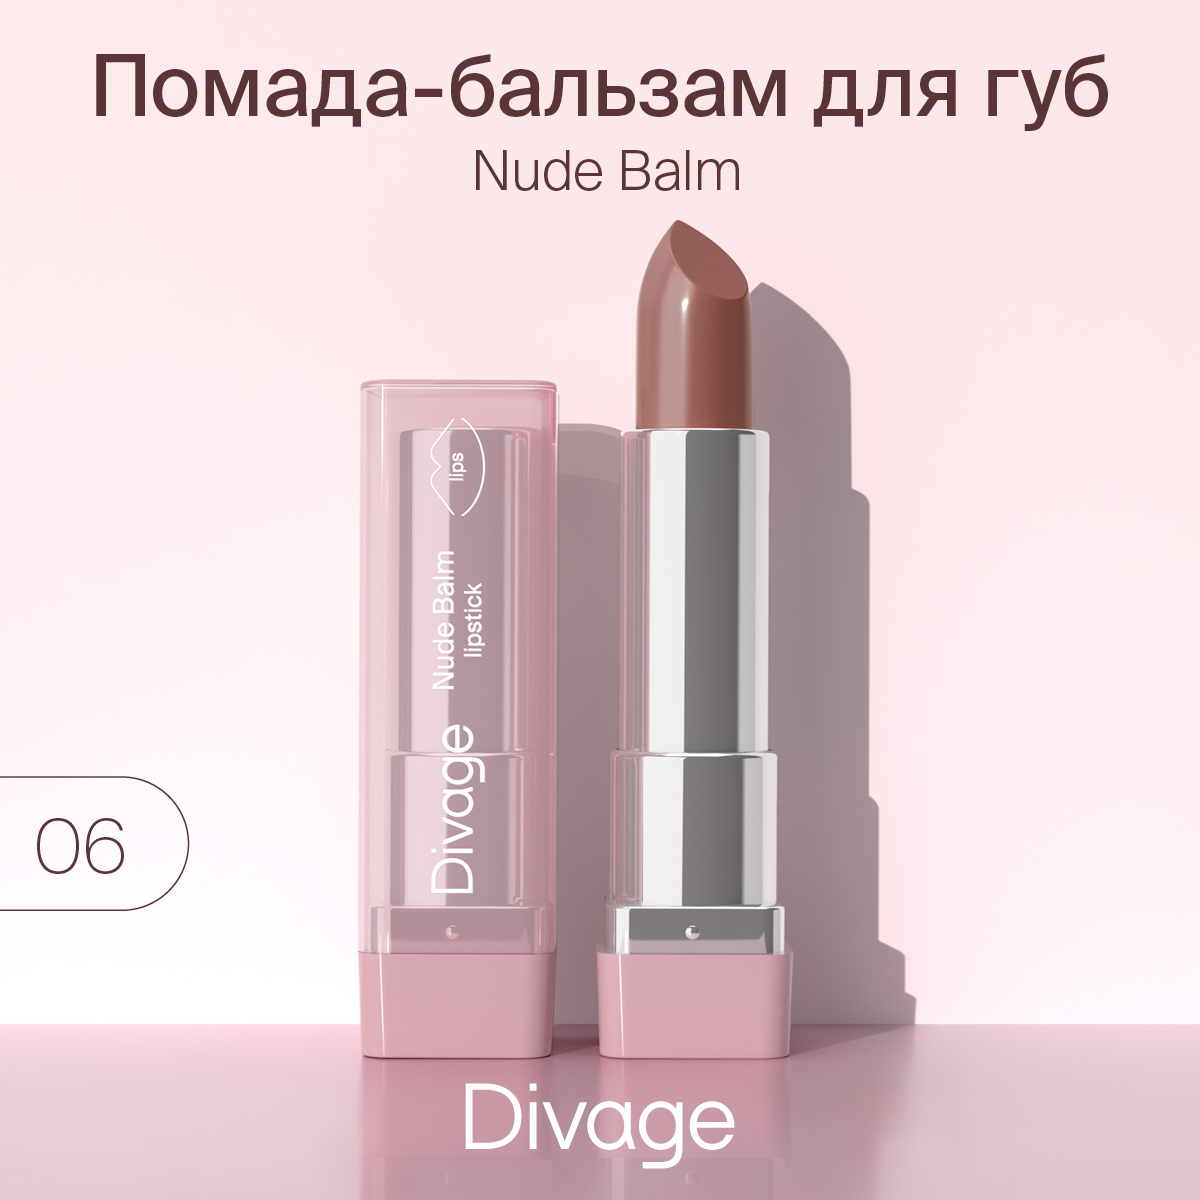 Губная помада-бальзам Divage Nude Balm Lipstick тон 06, 22 г, купить в Москве, цены в интернет-магазинах на Мегамаркет